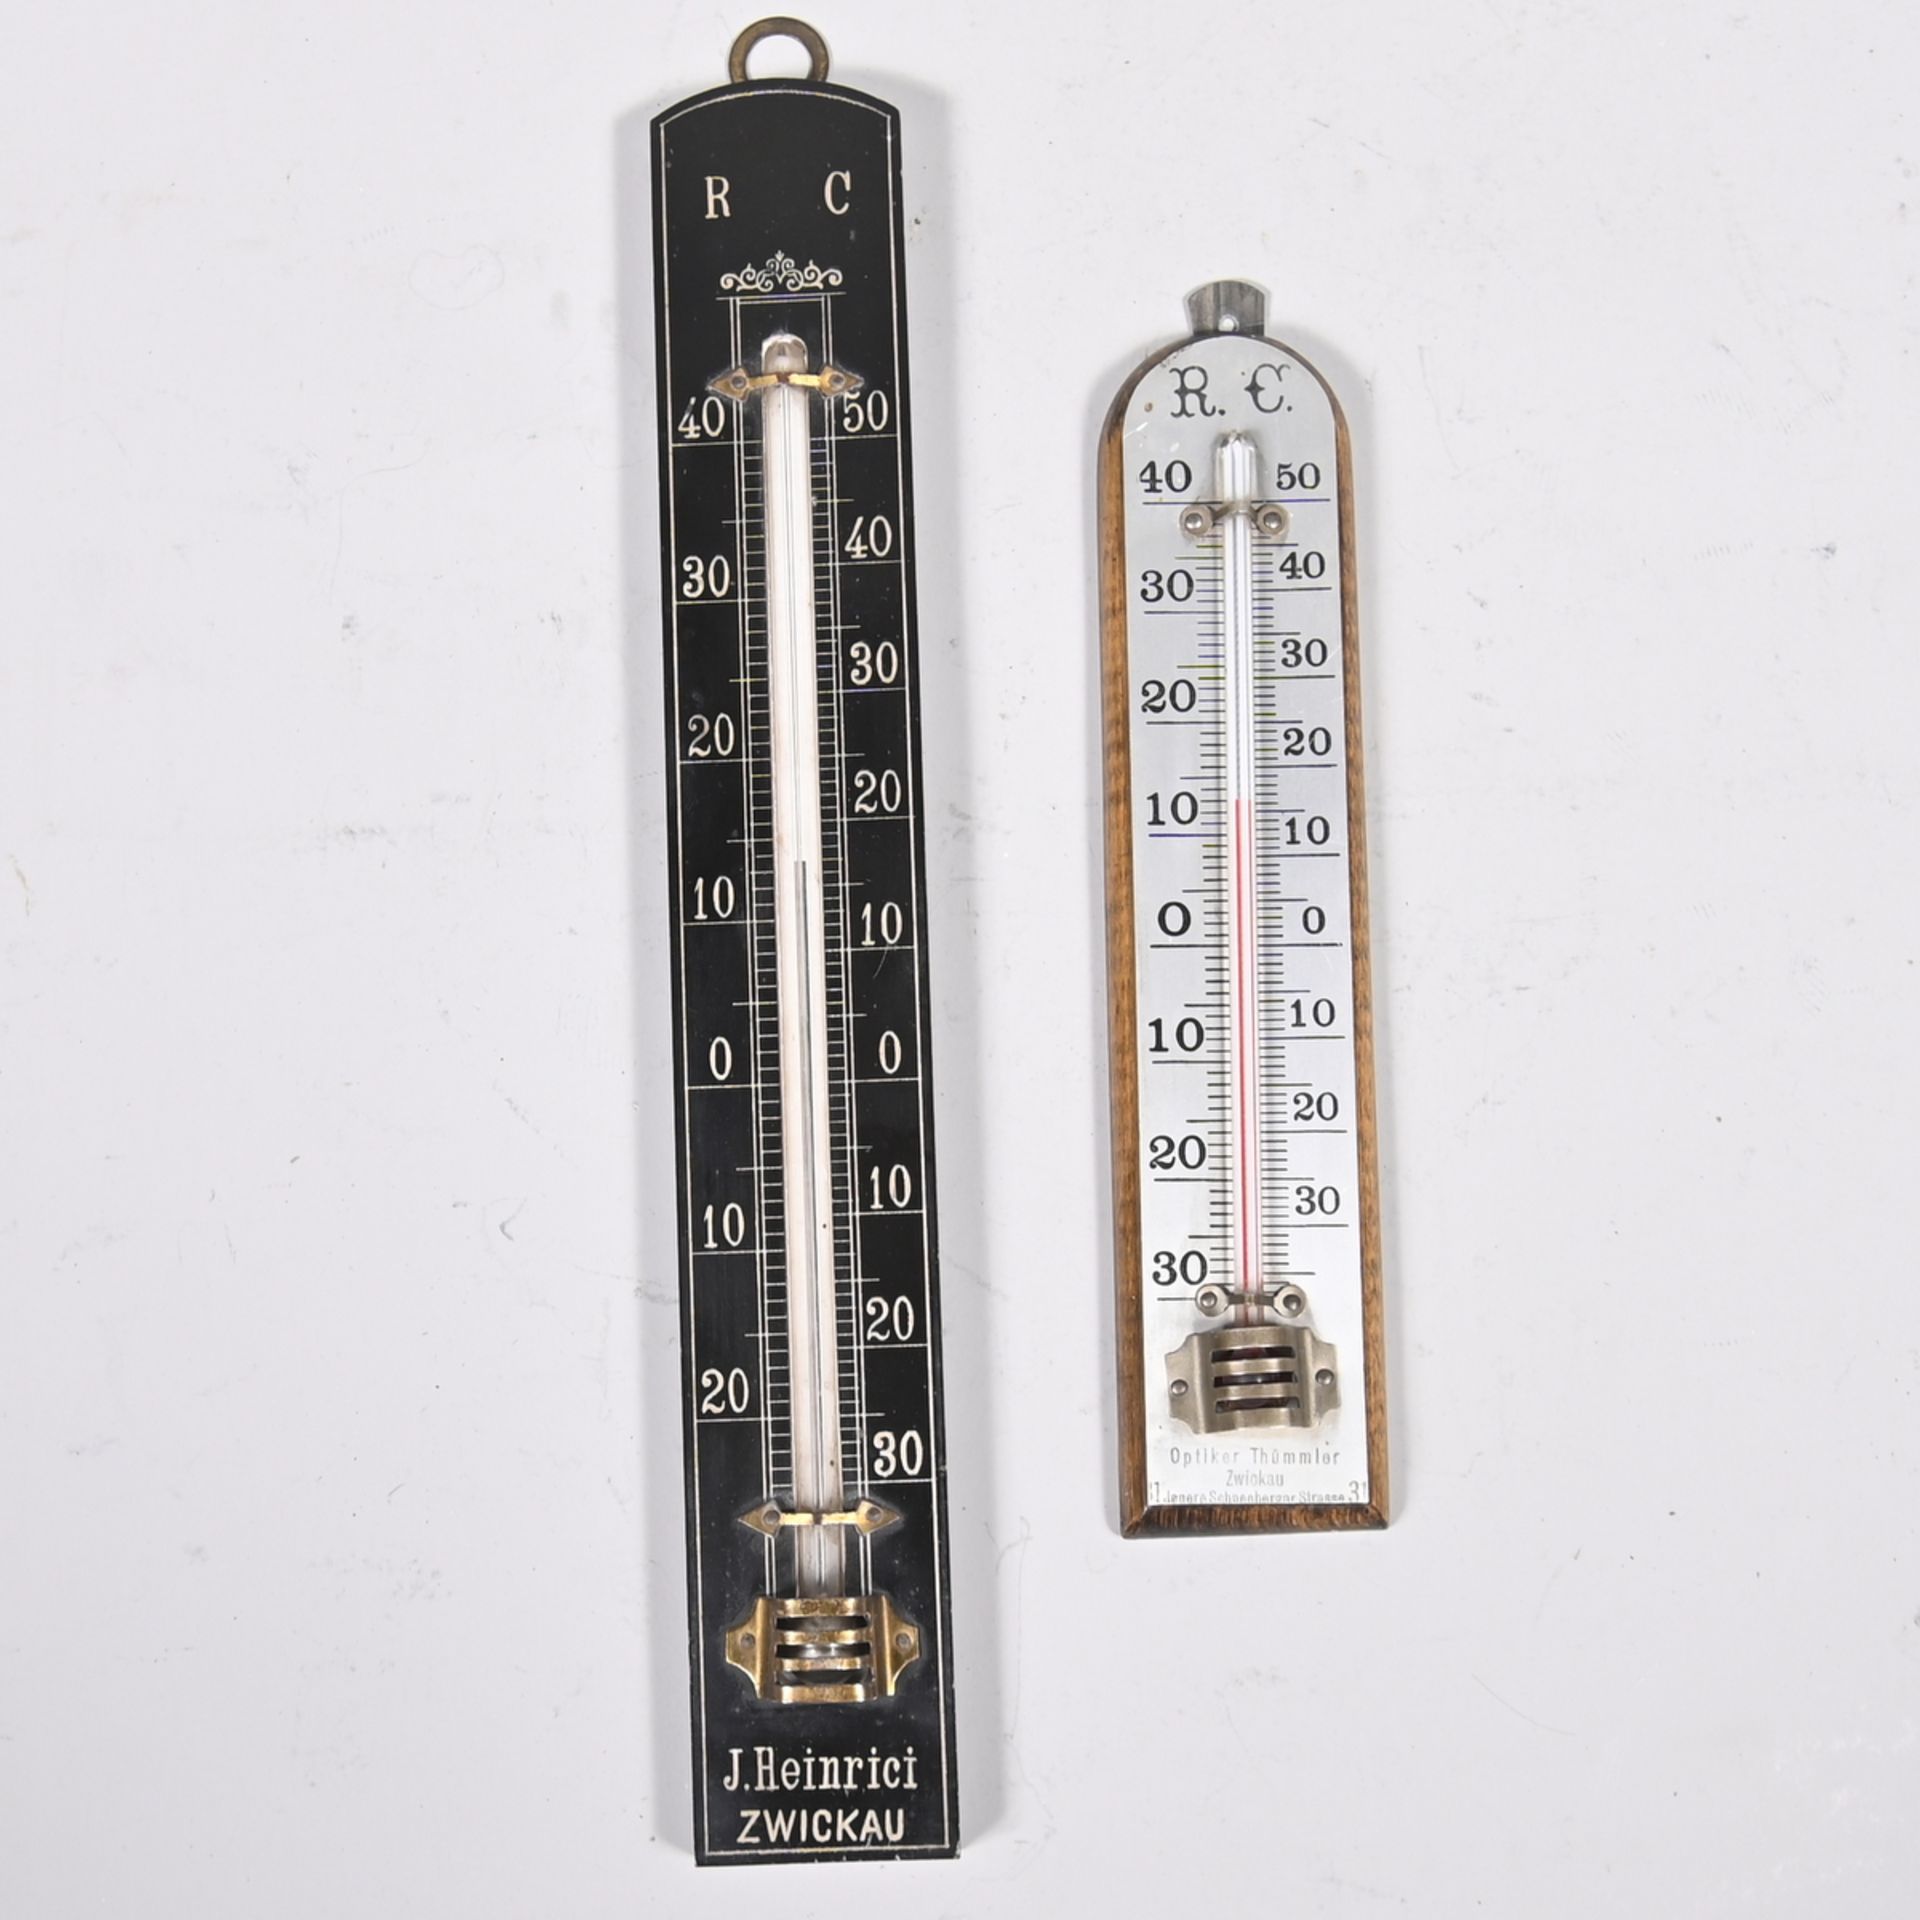 Zwei Thermometer, einmal mit Werbemarke" Opiker Thümmler Zwickau "und einmal mit "J. Heinrici